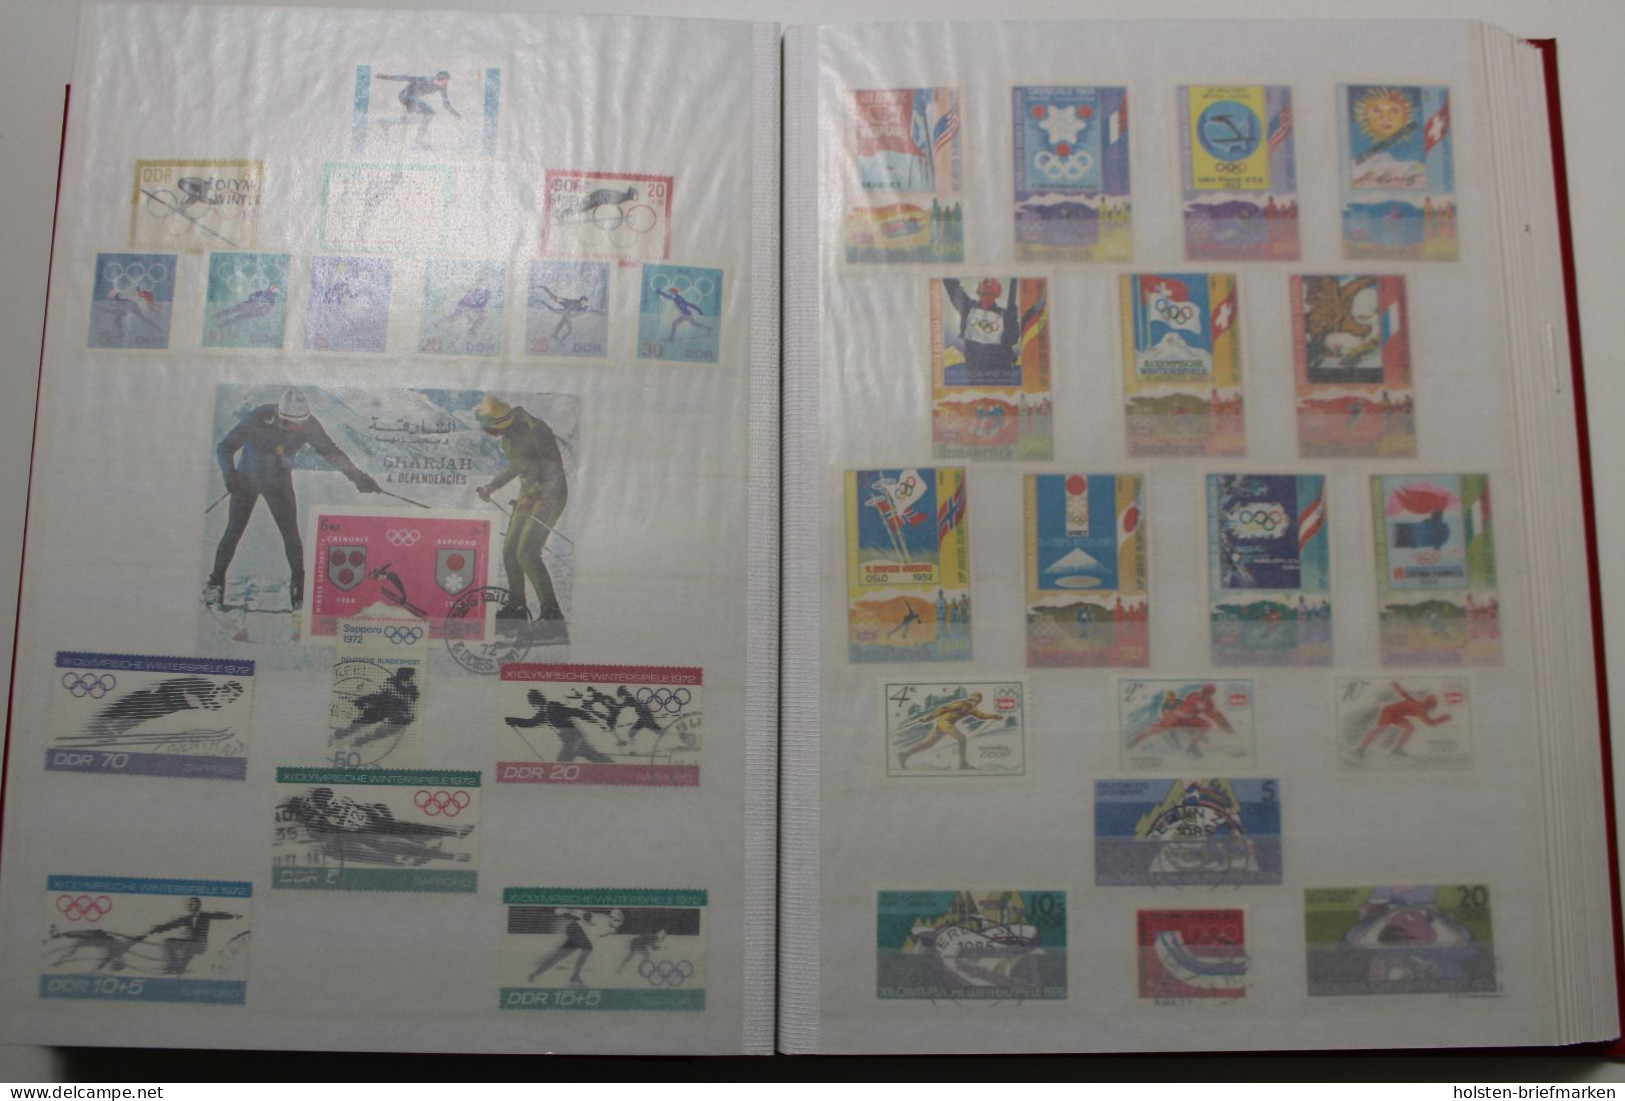 Briefmarken-Posten Europa und Übersee, großer Karton voller Alben